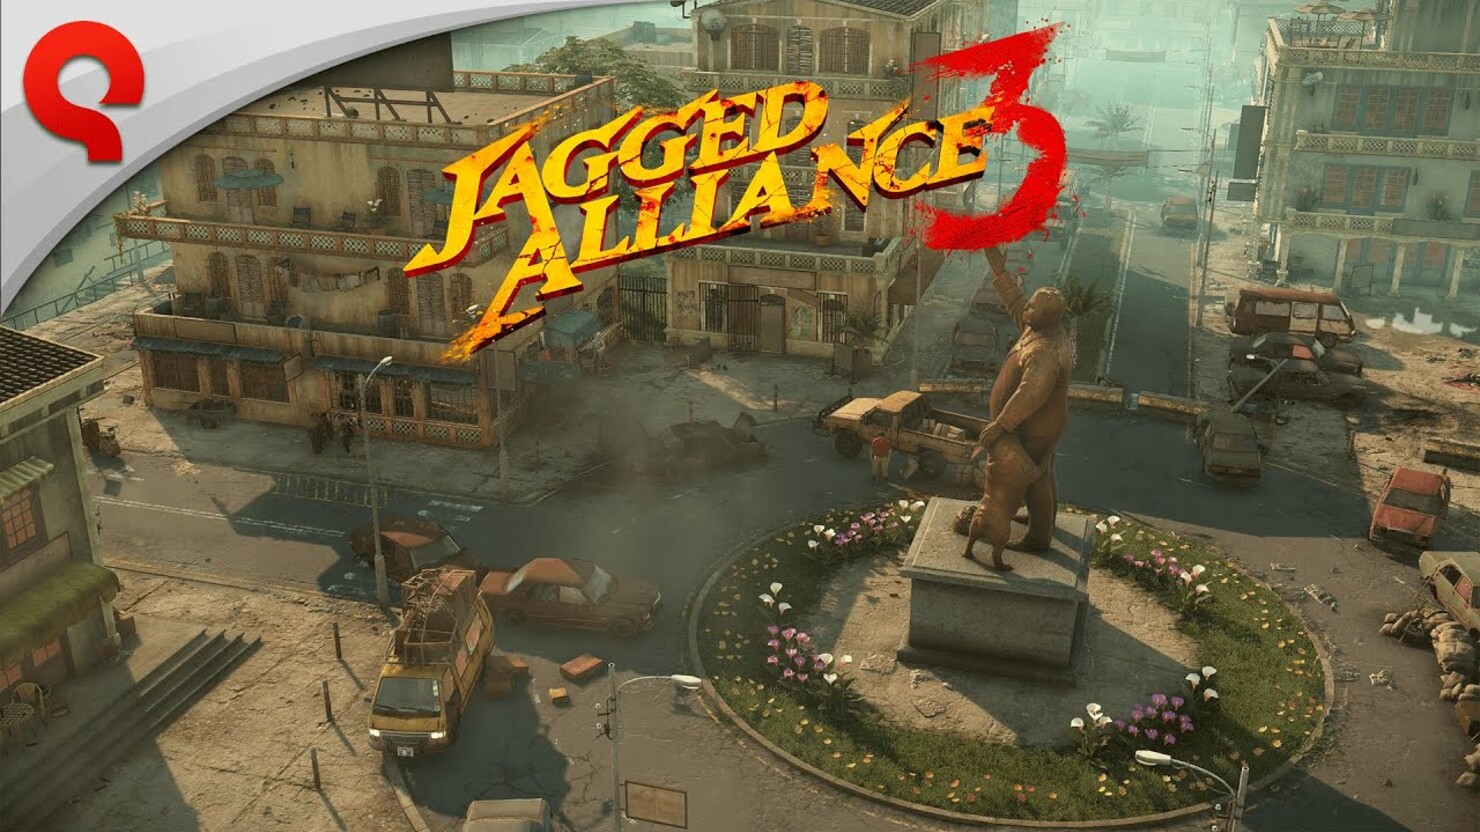 Jagged alliance 3 по сети на пиратке без стима фото 88